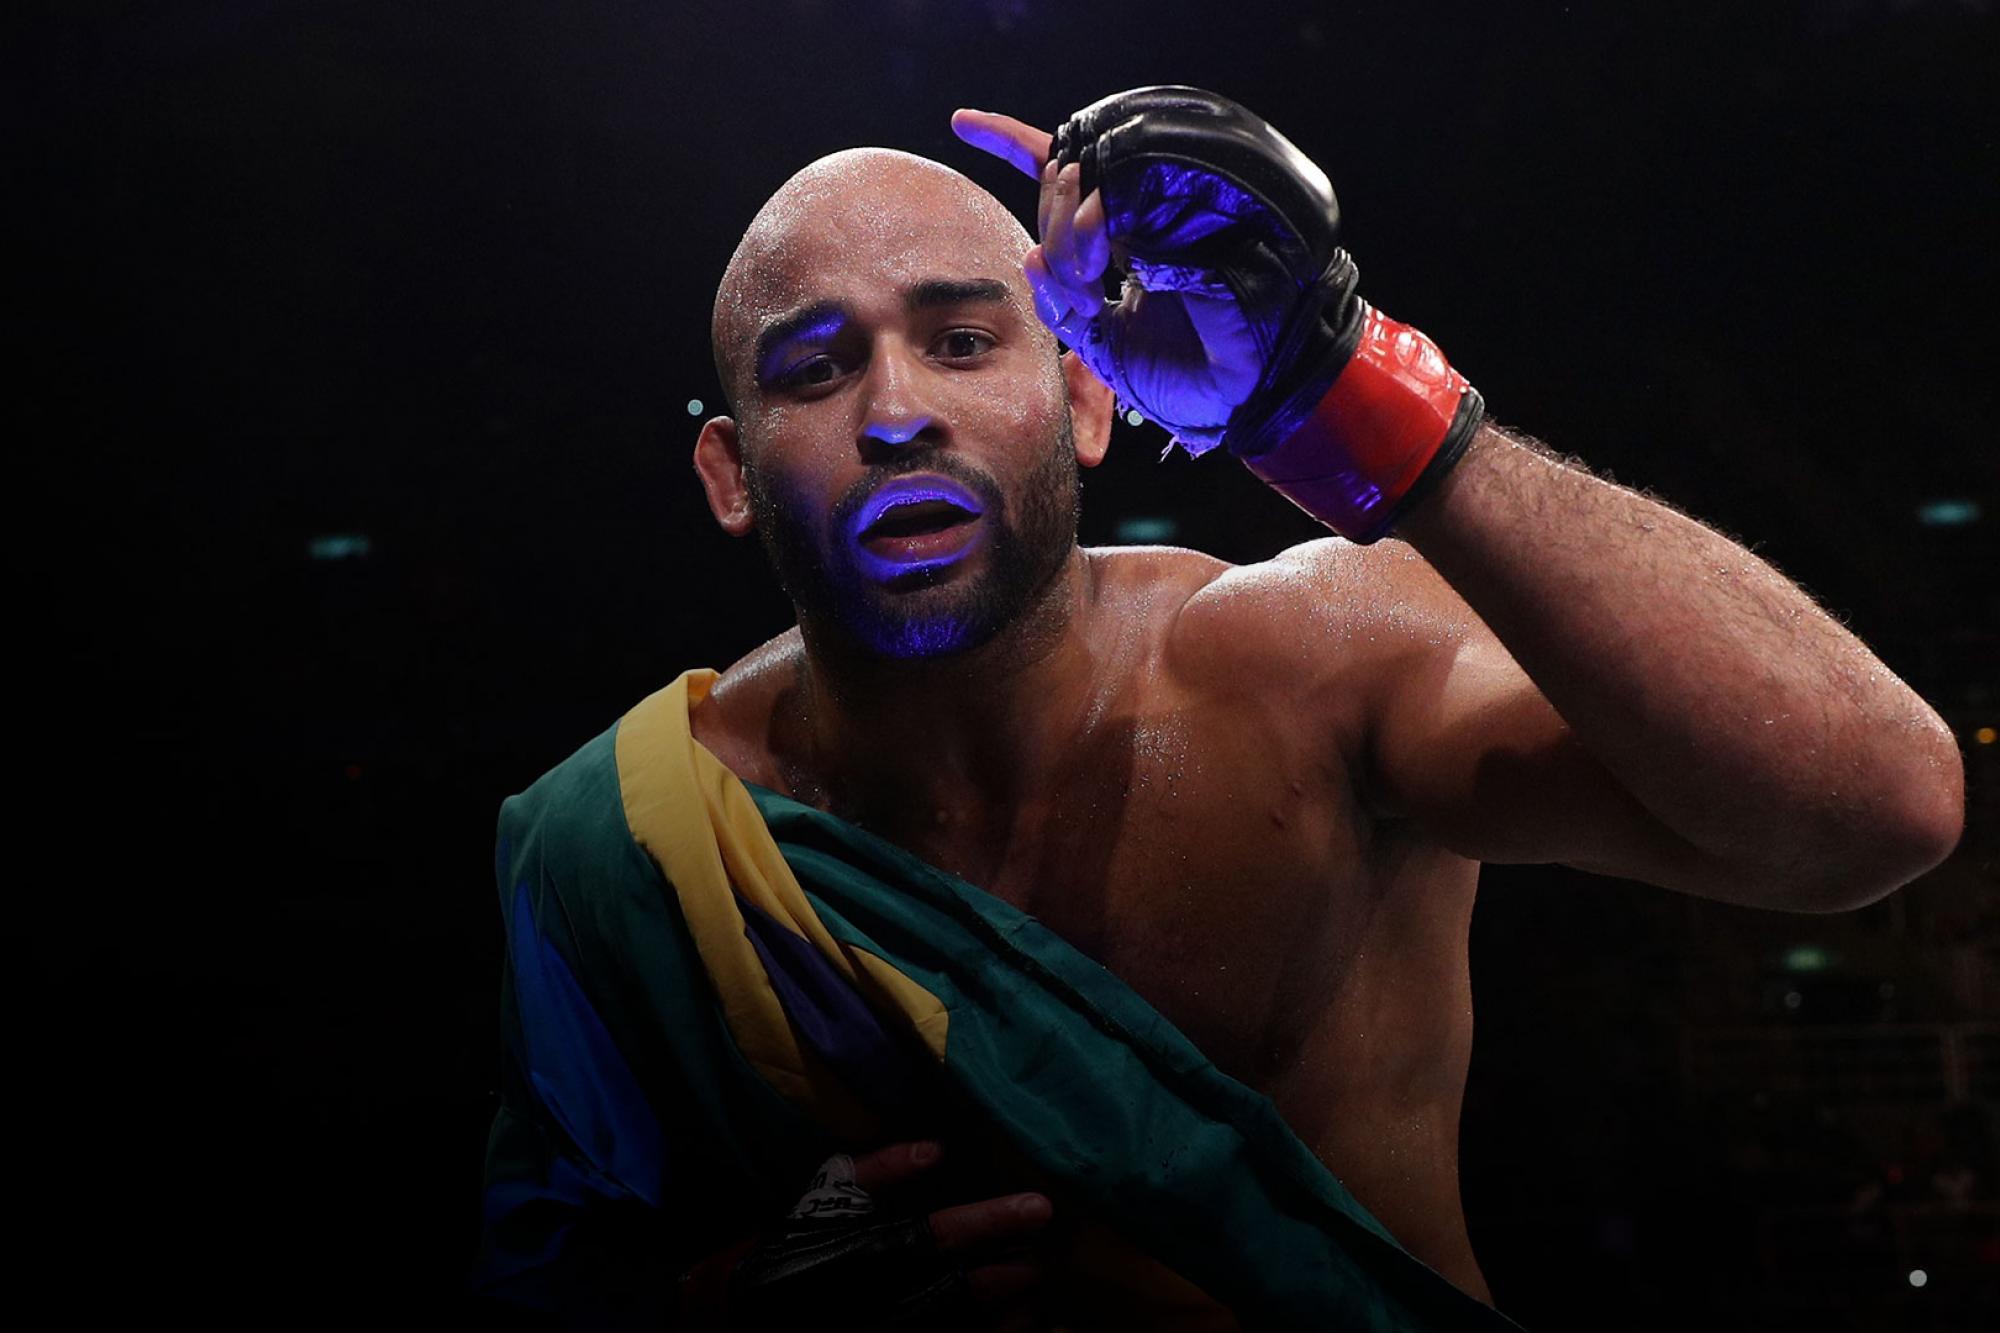 Campeão do TUF Brasil 3, Warlley Alves busca sequência no UFC